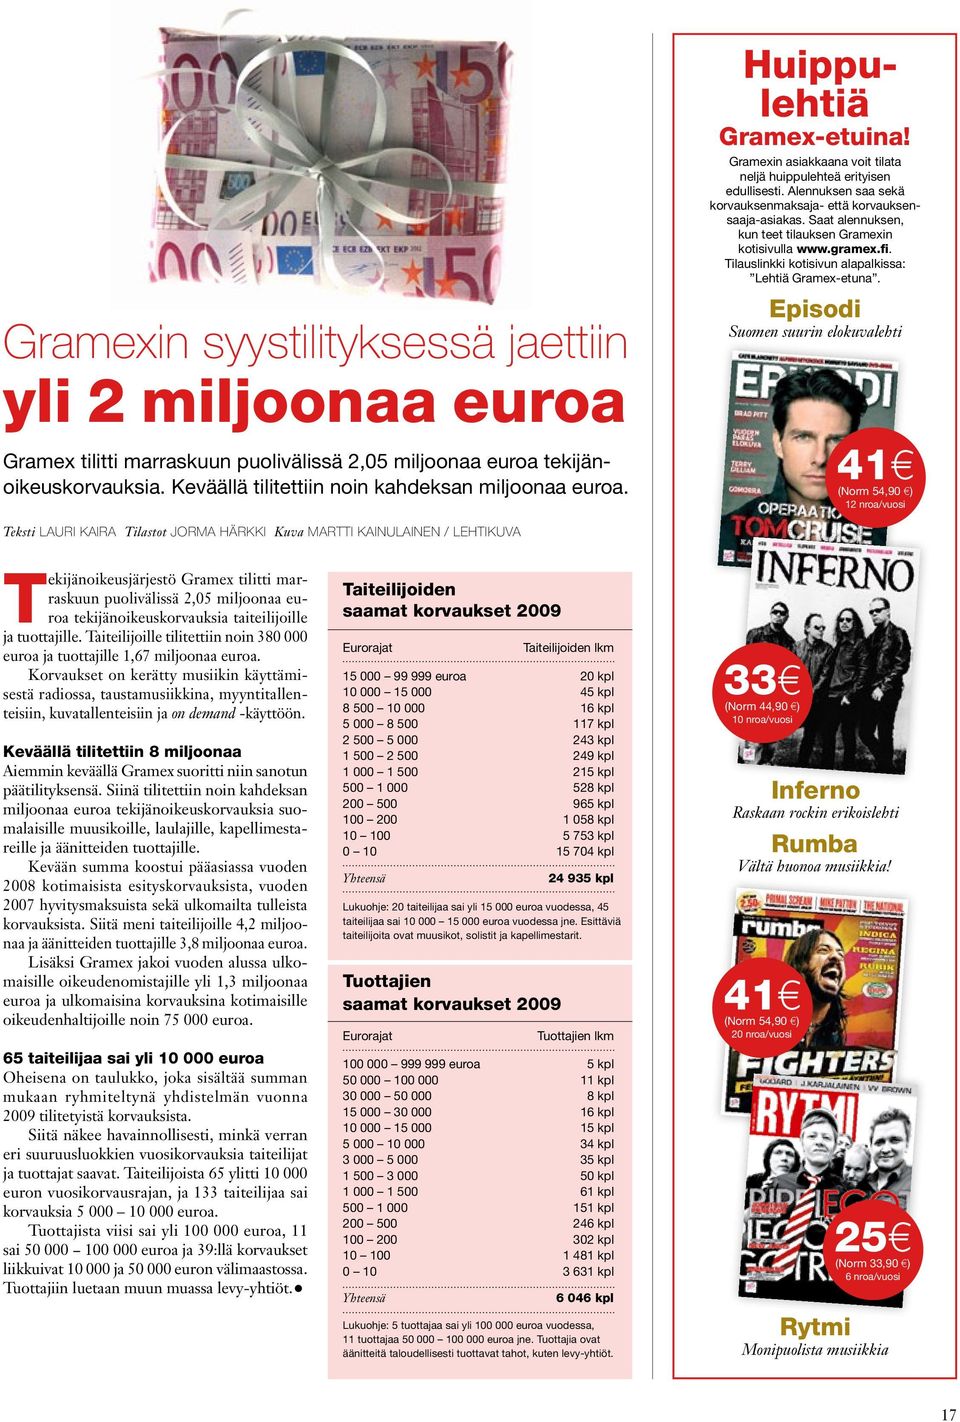 Saat alennuksen, kun teet tilauksen Gramexin kotisivulla www.gramex.fi. Tilauslinkki kotisivun alapalkissa: Lehtiä Gramex-etuna.